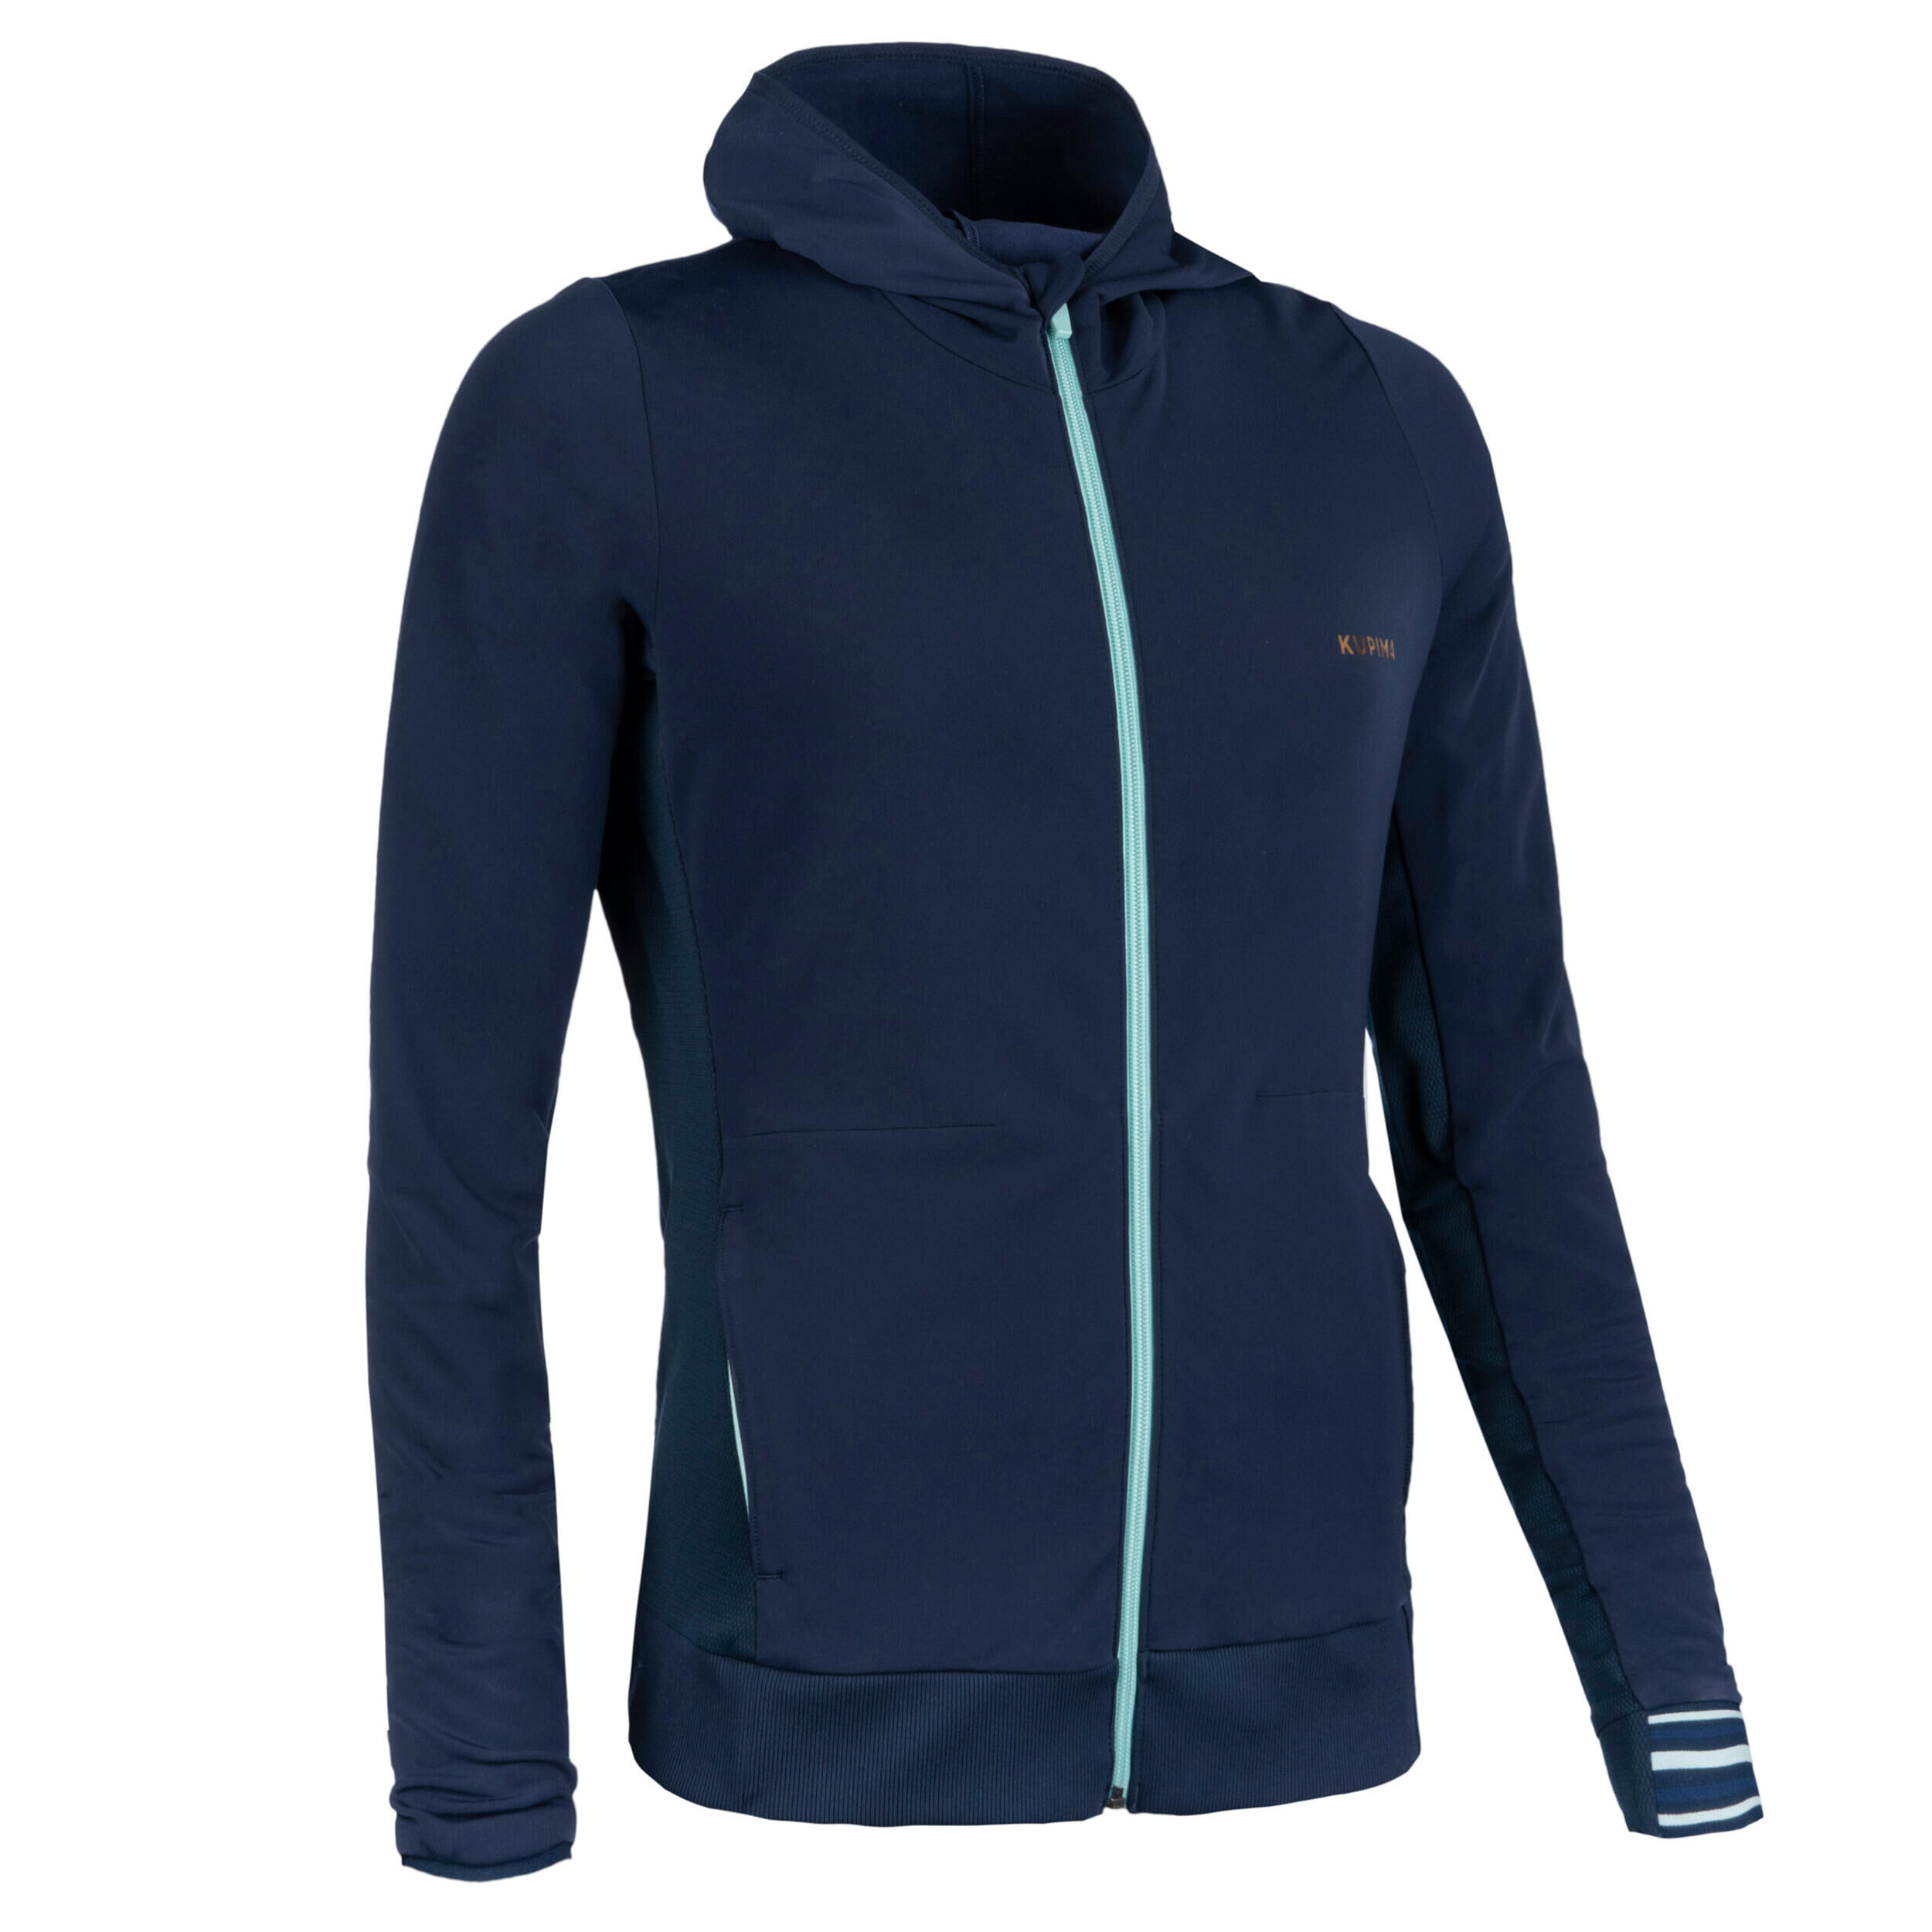 KALENJI Warm Women's Athletics Jacket - Navy Blue / Light Blue